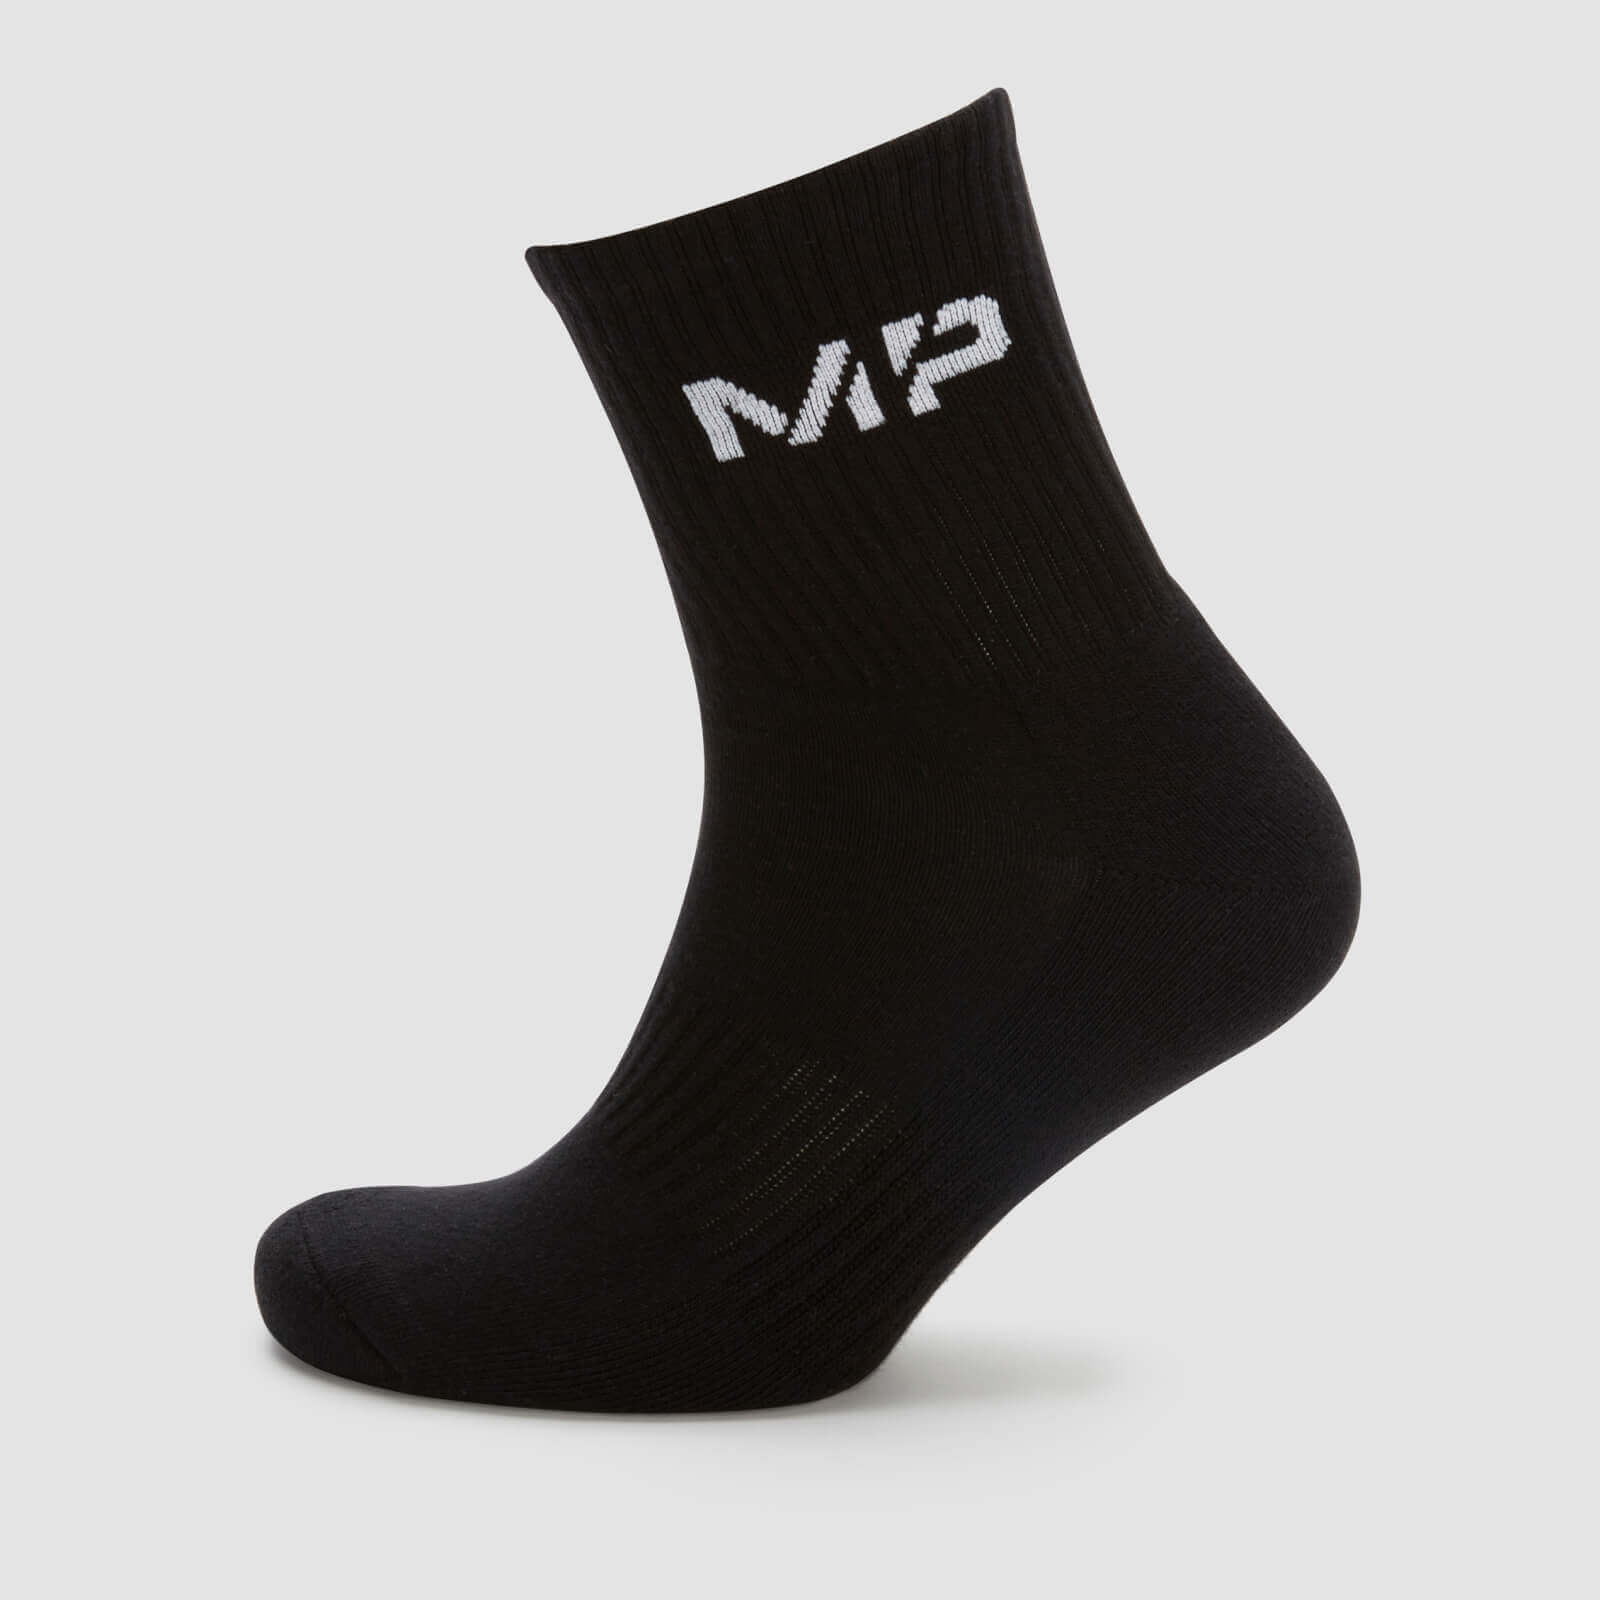 MP muške sportske čarape (1 komad u paketu) – crne